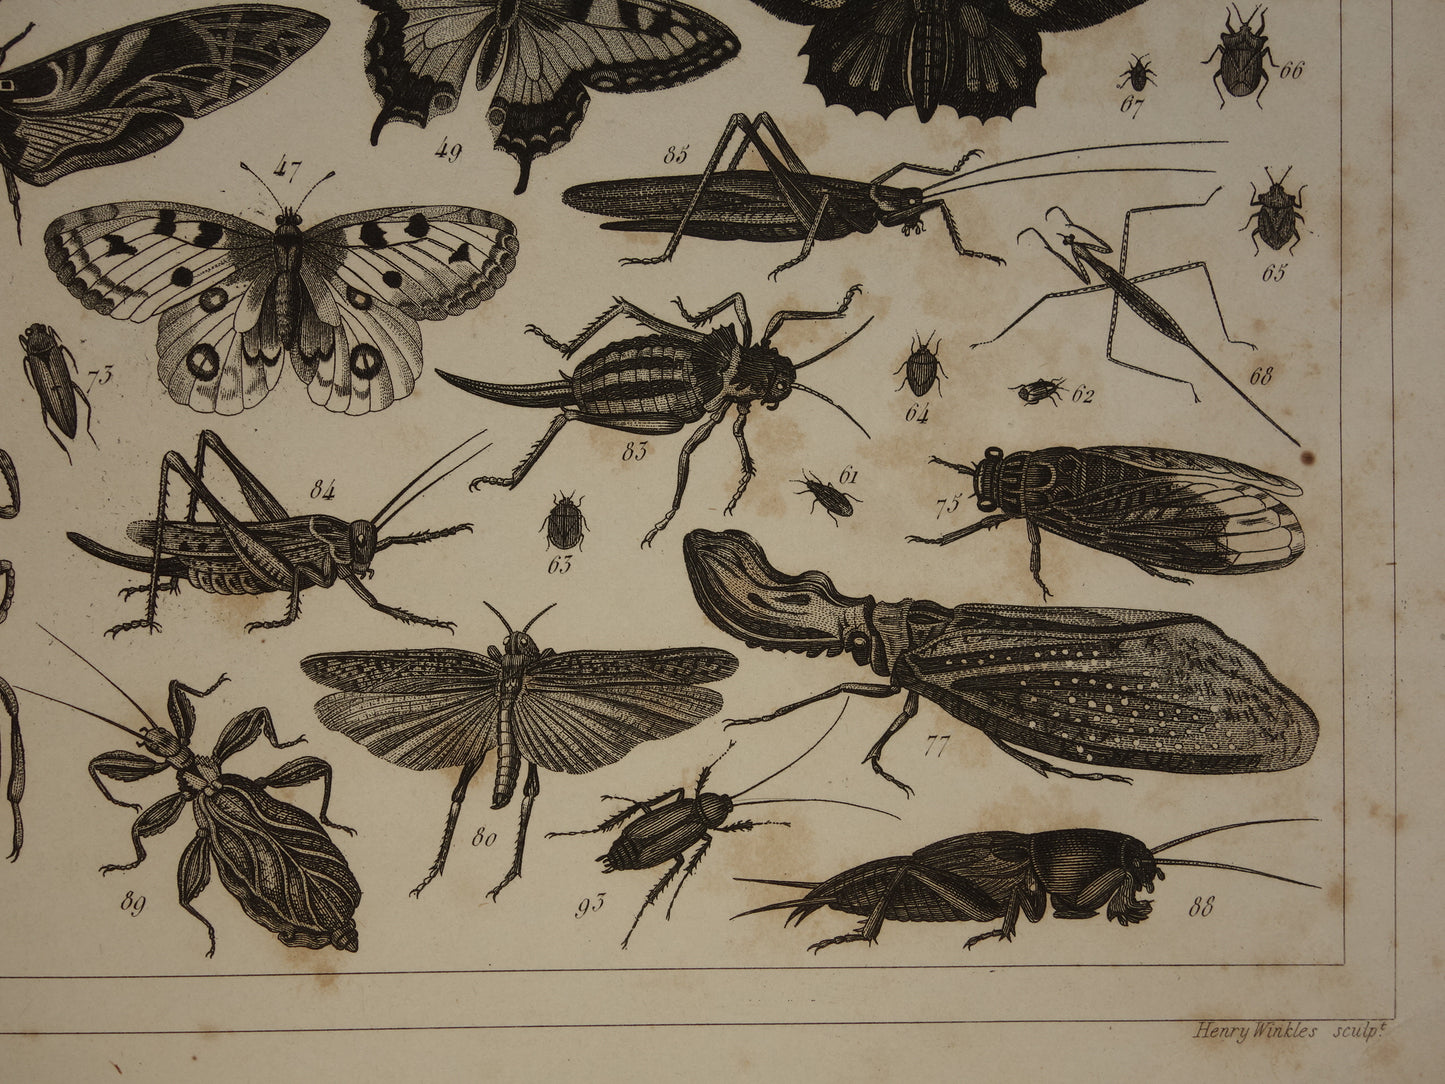 Vintage illustratie Vlinders - Originele antieke vlinder prent uit 1849 - Oude prints van insecten